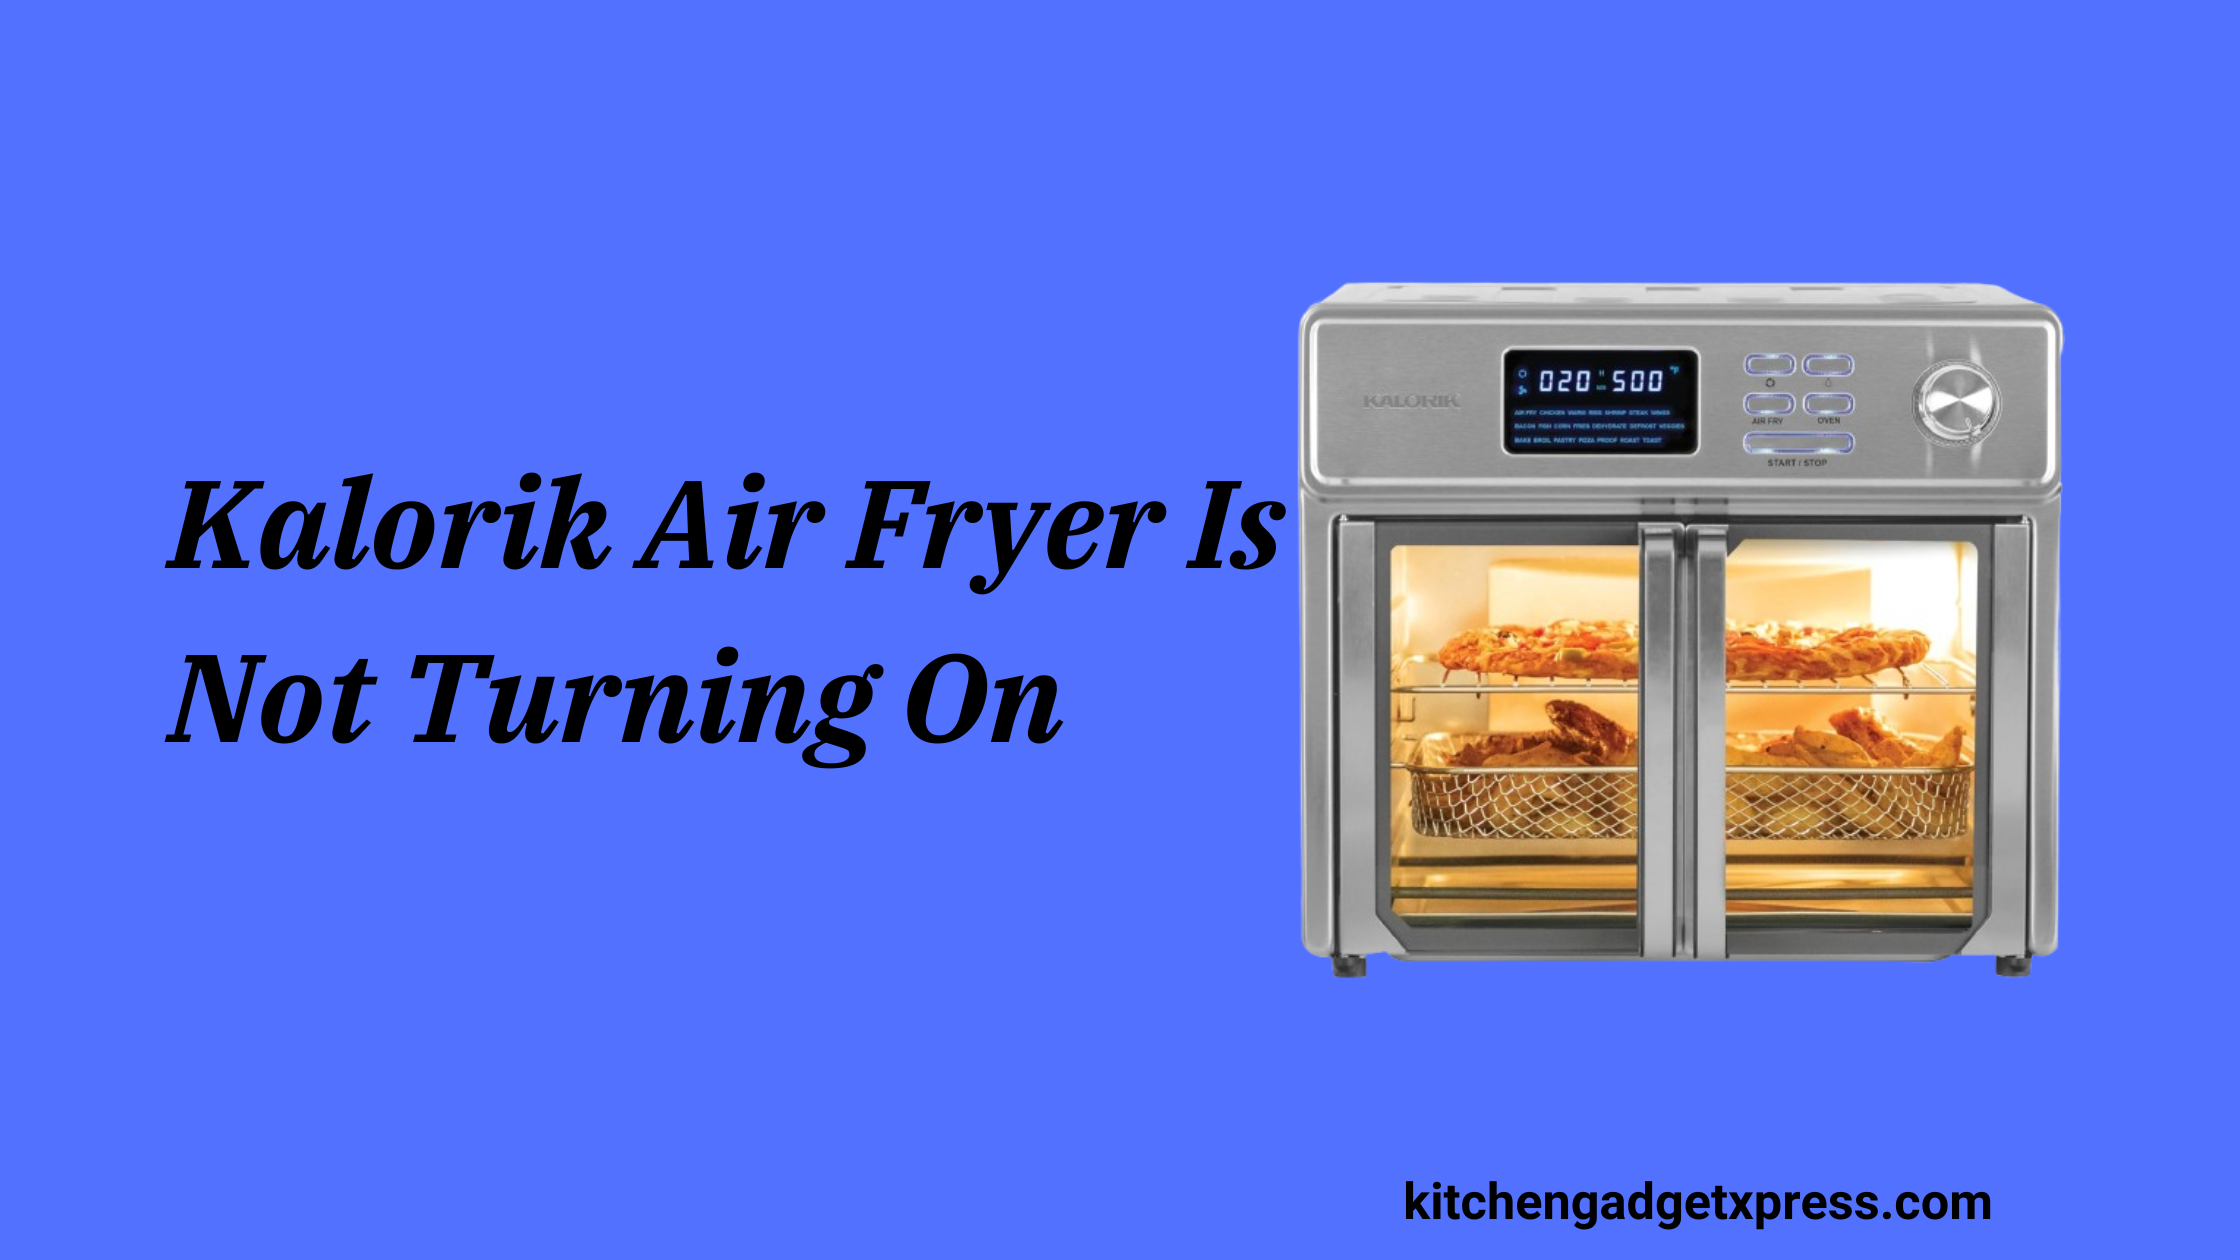 Kalorik Air Fryer Is Not Turning On